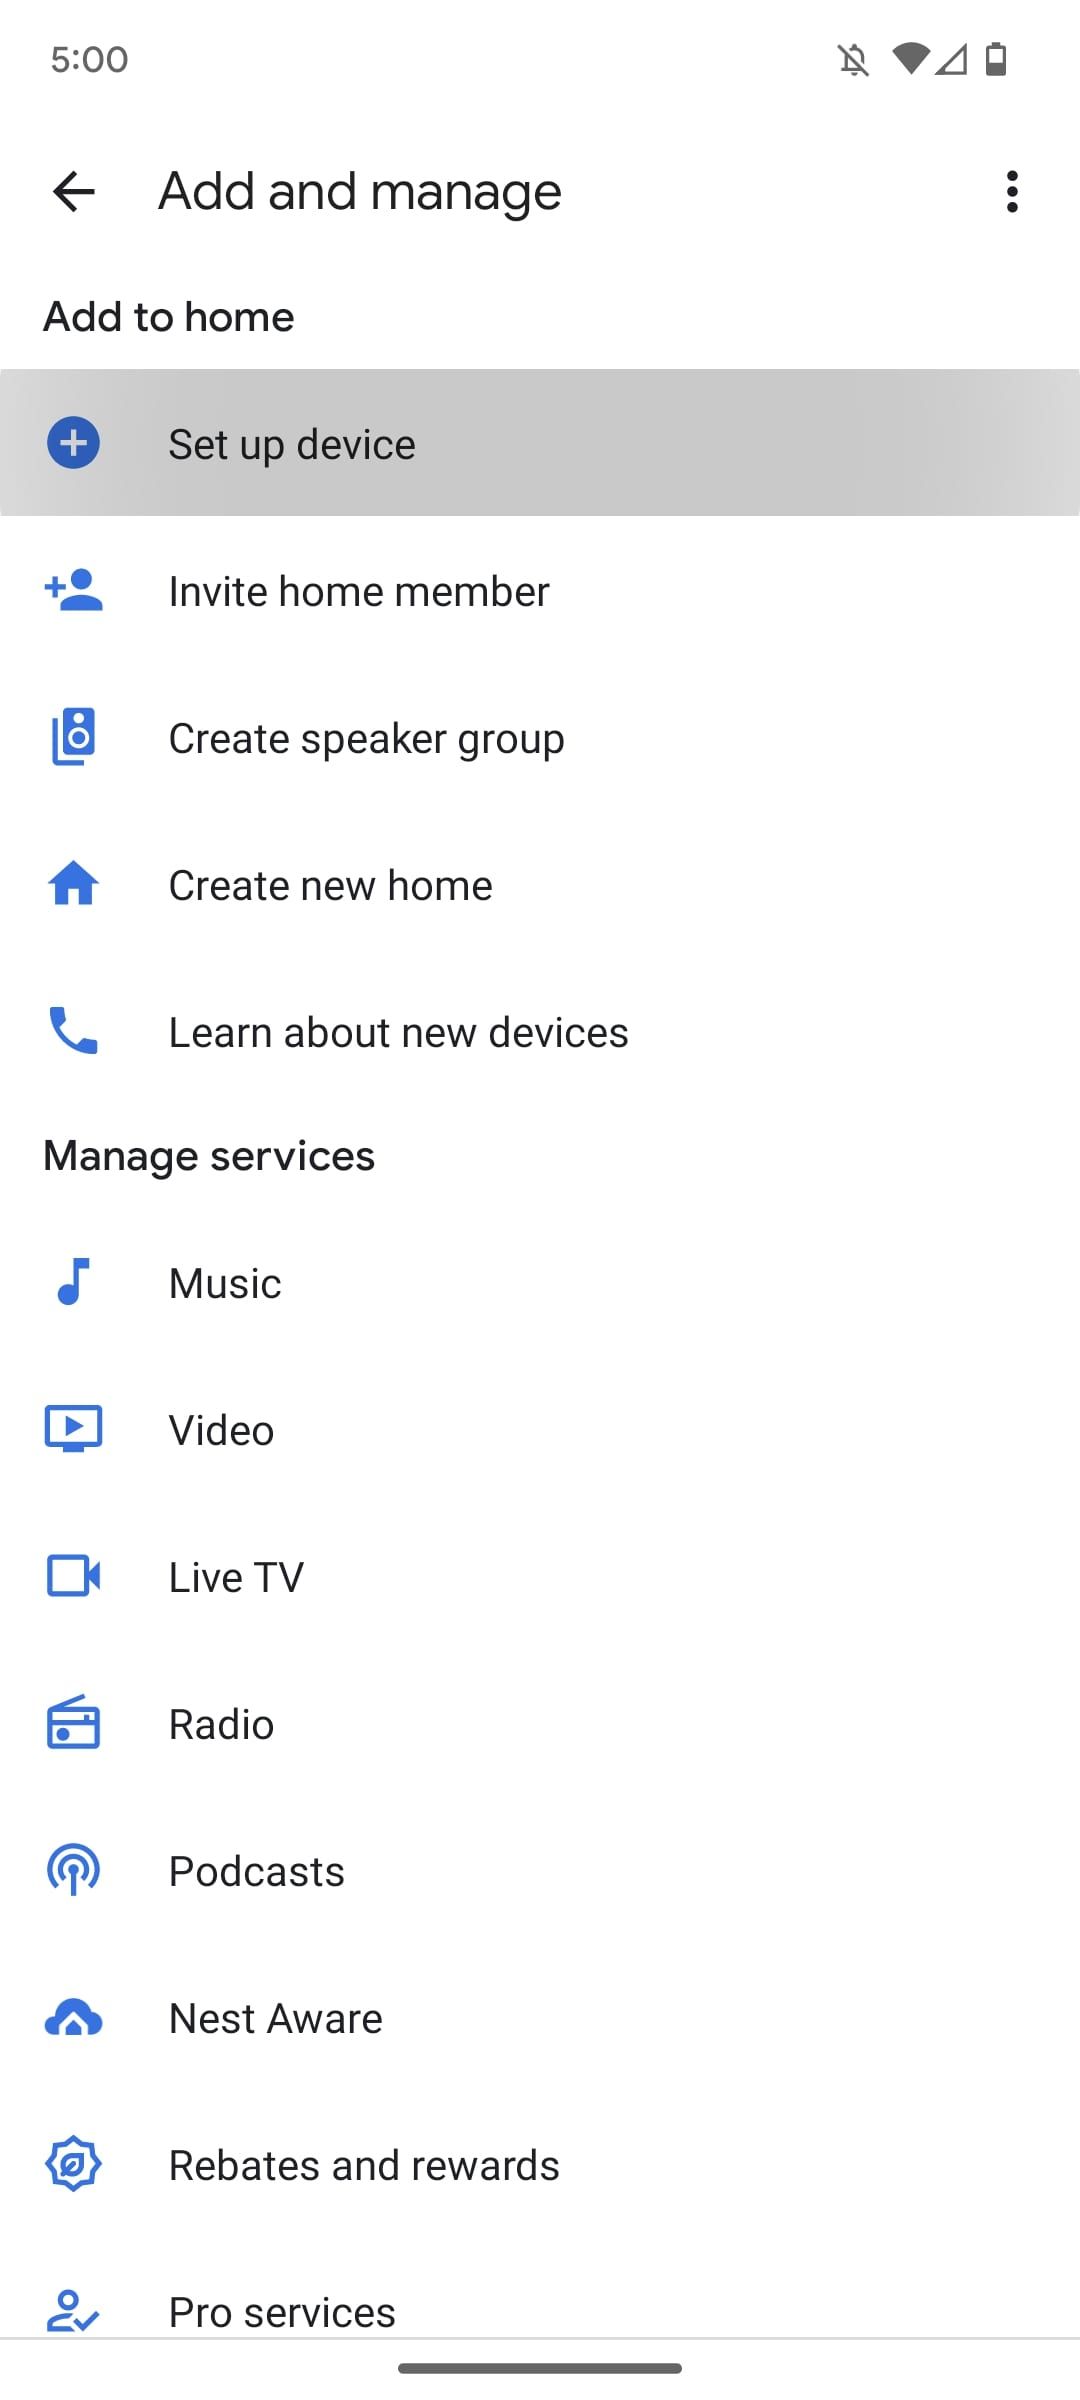 google home menu for adding devices